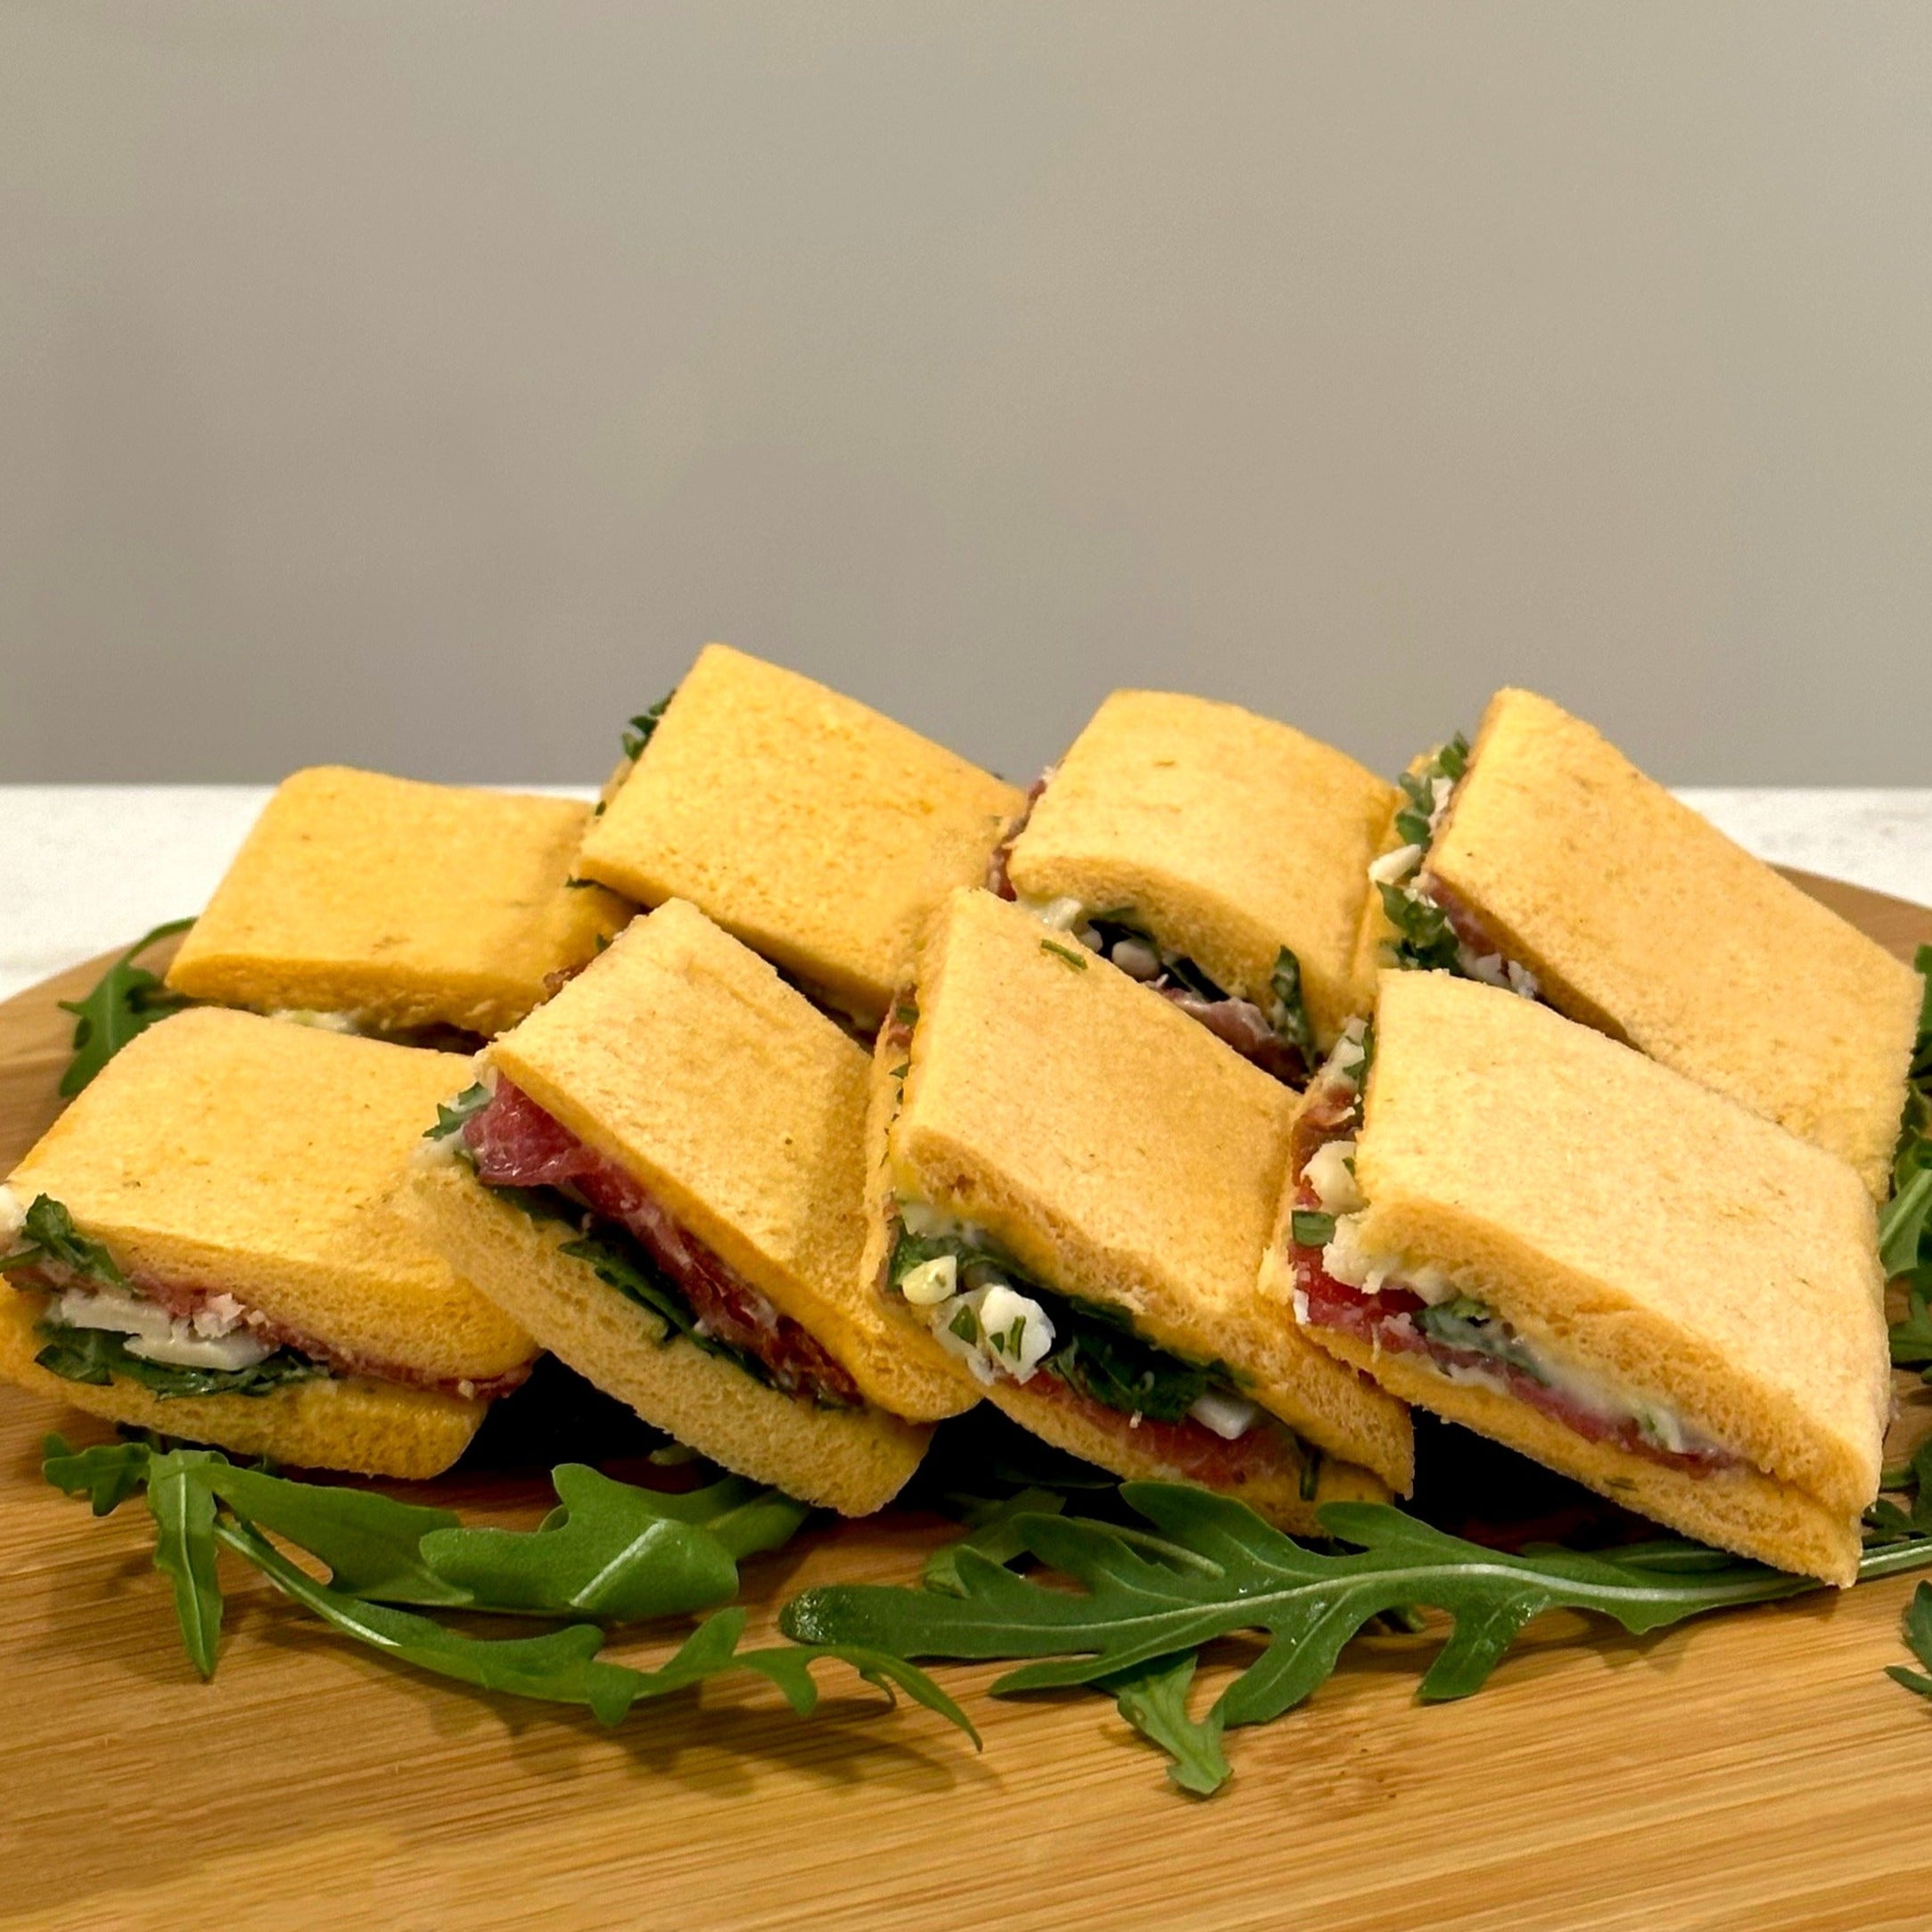 Bandeja de 8 mini sandwiches de carpaccio, rúcula y mayonesa de tomate seco